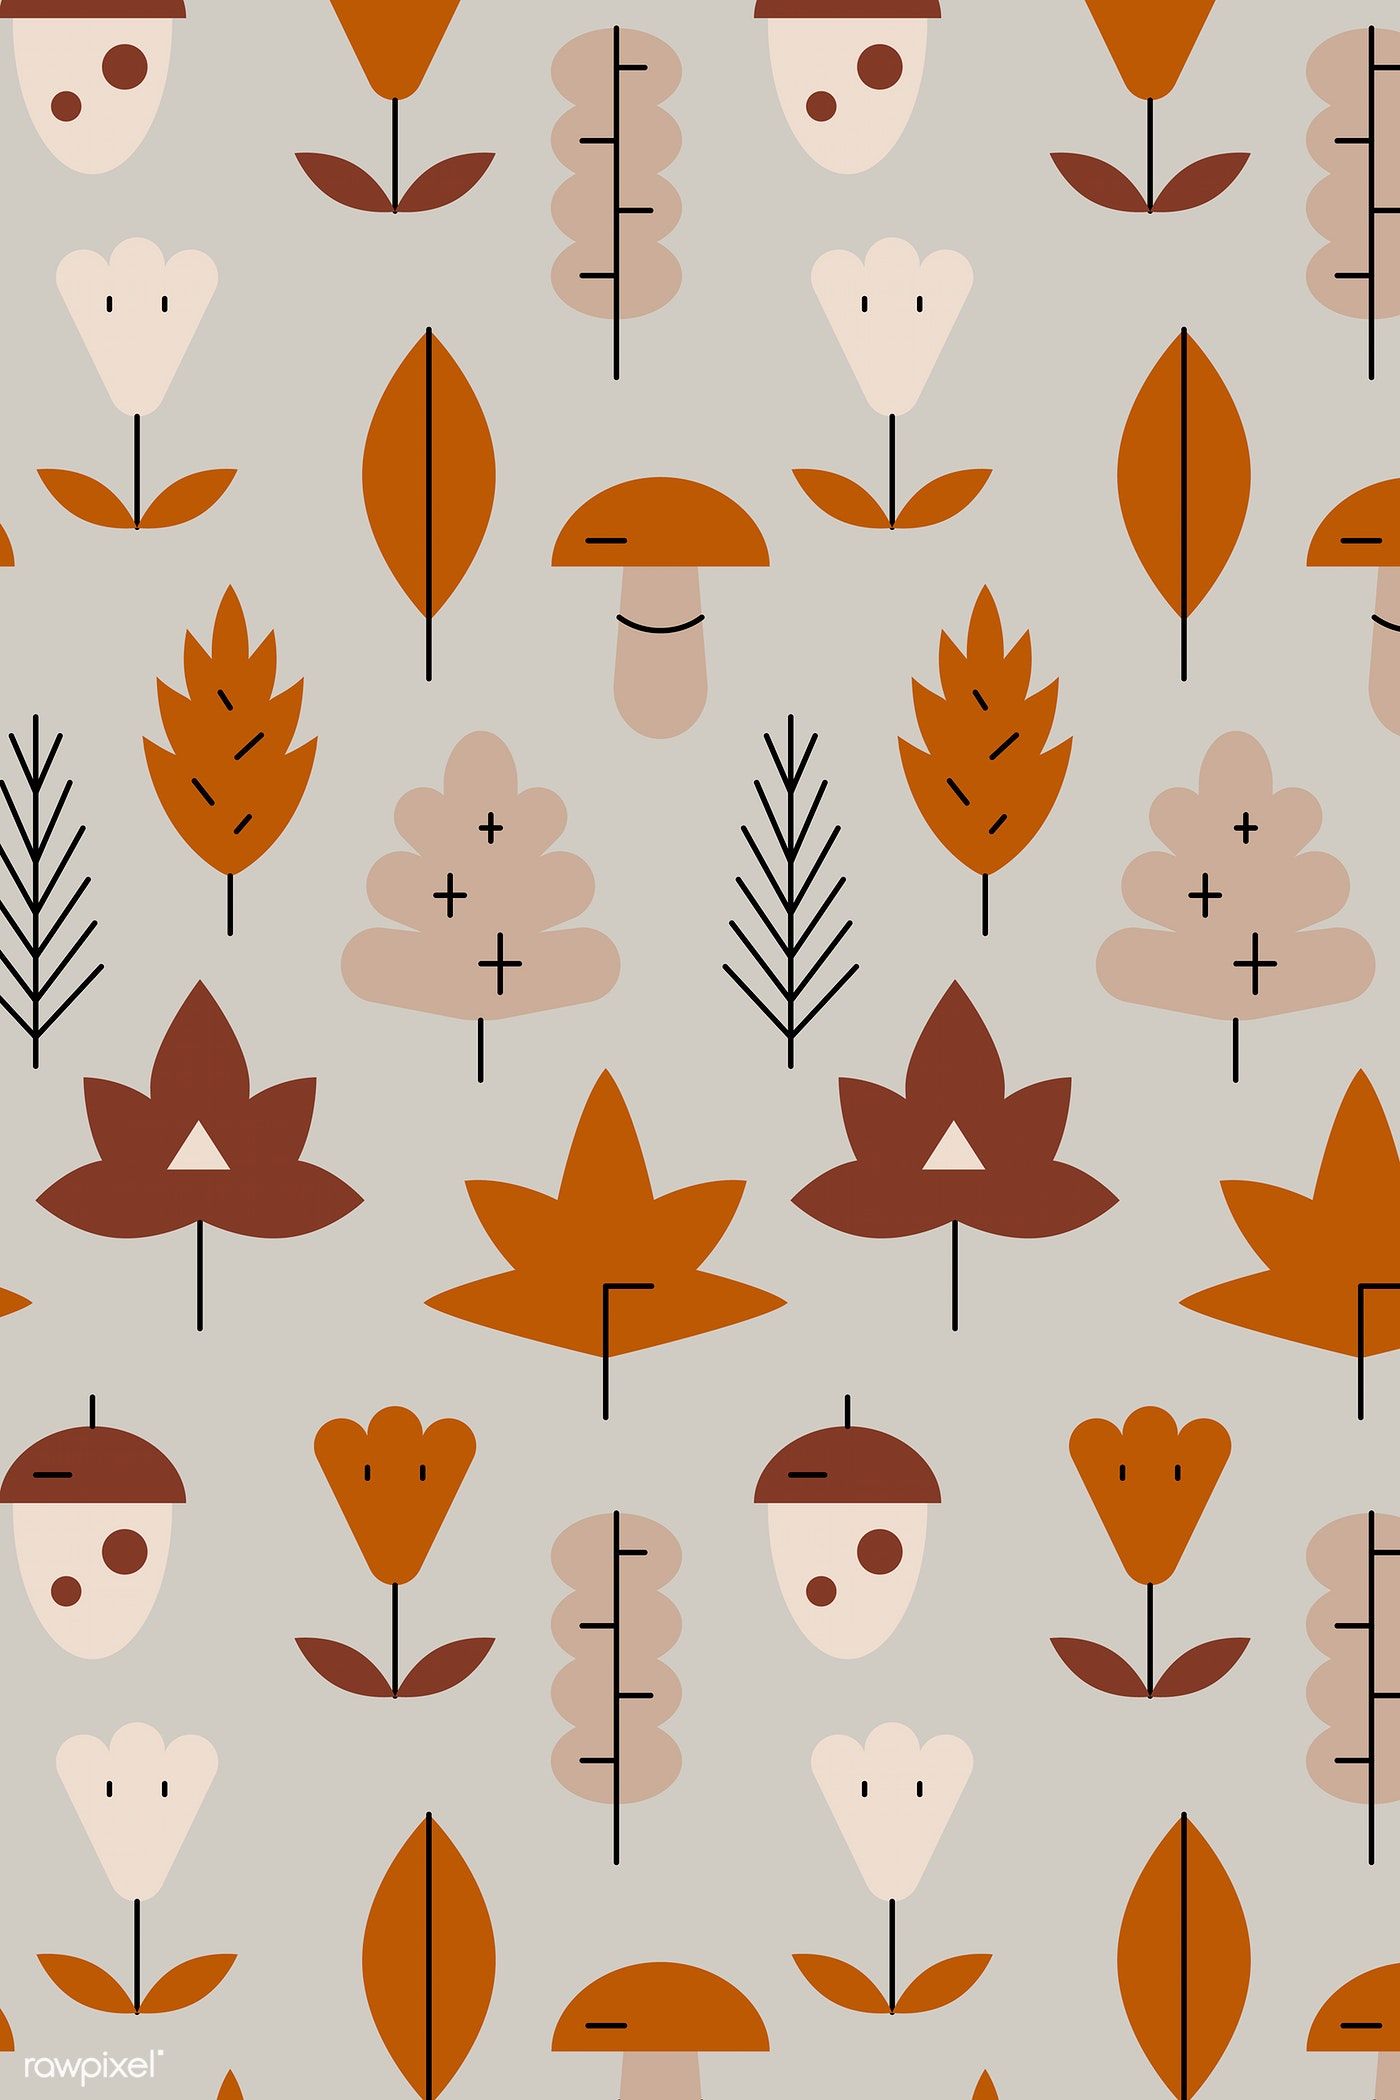 Download premium vector of Autumn plant patterned background vector 936080. Vector background pattern, Plant pattern, Background patterns